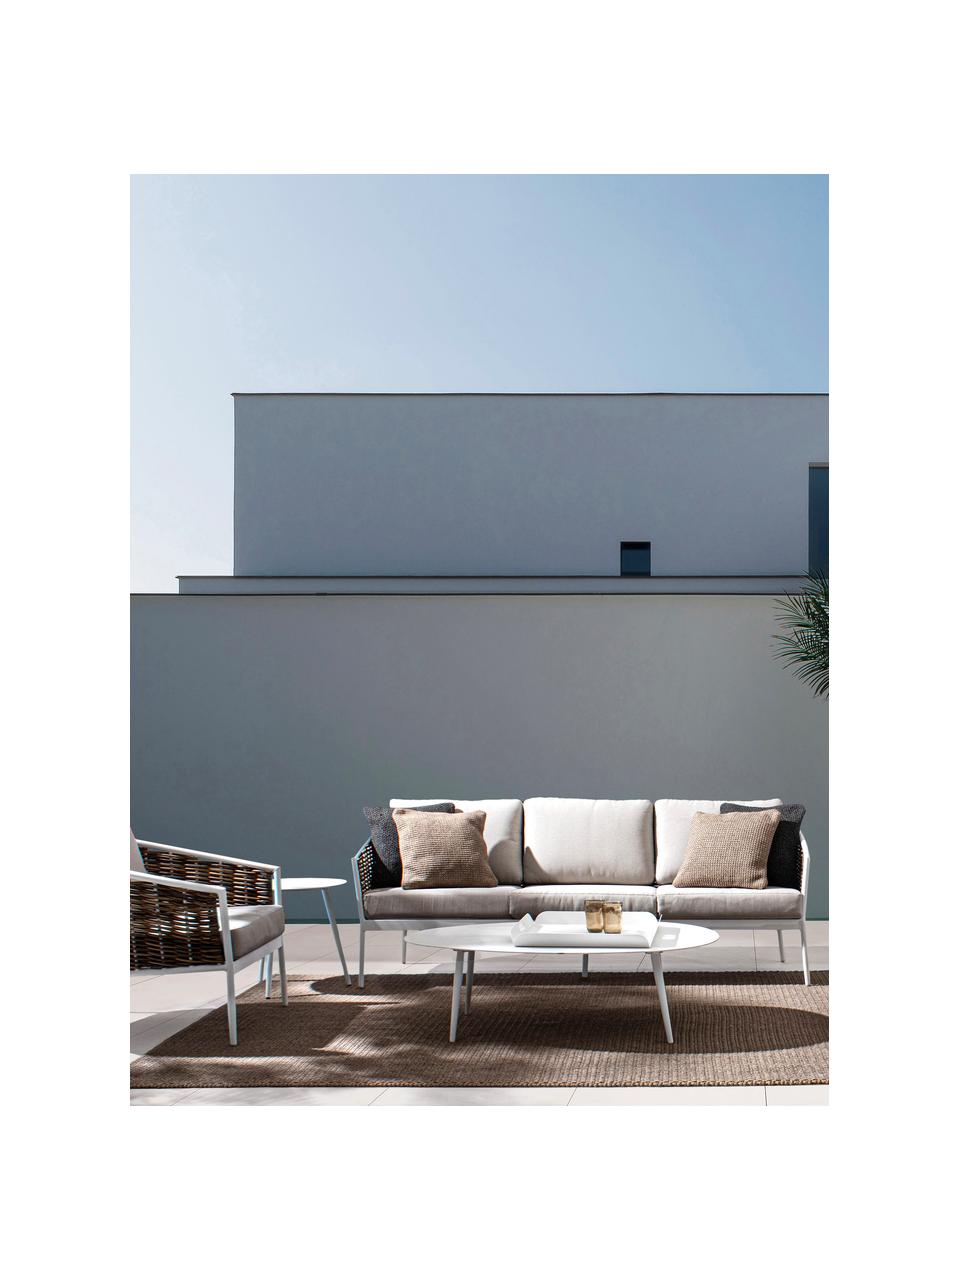 Table basse de jardin Ridley, Aluminium, revêtement par poudre, Blanc, larg. 120 x haut. 36 cm